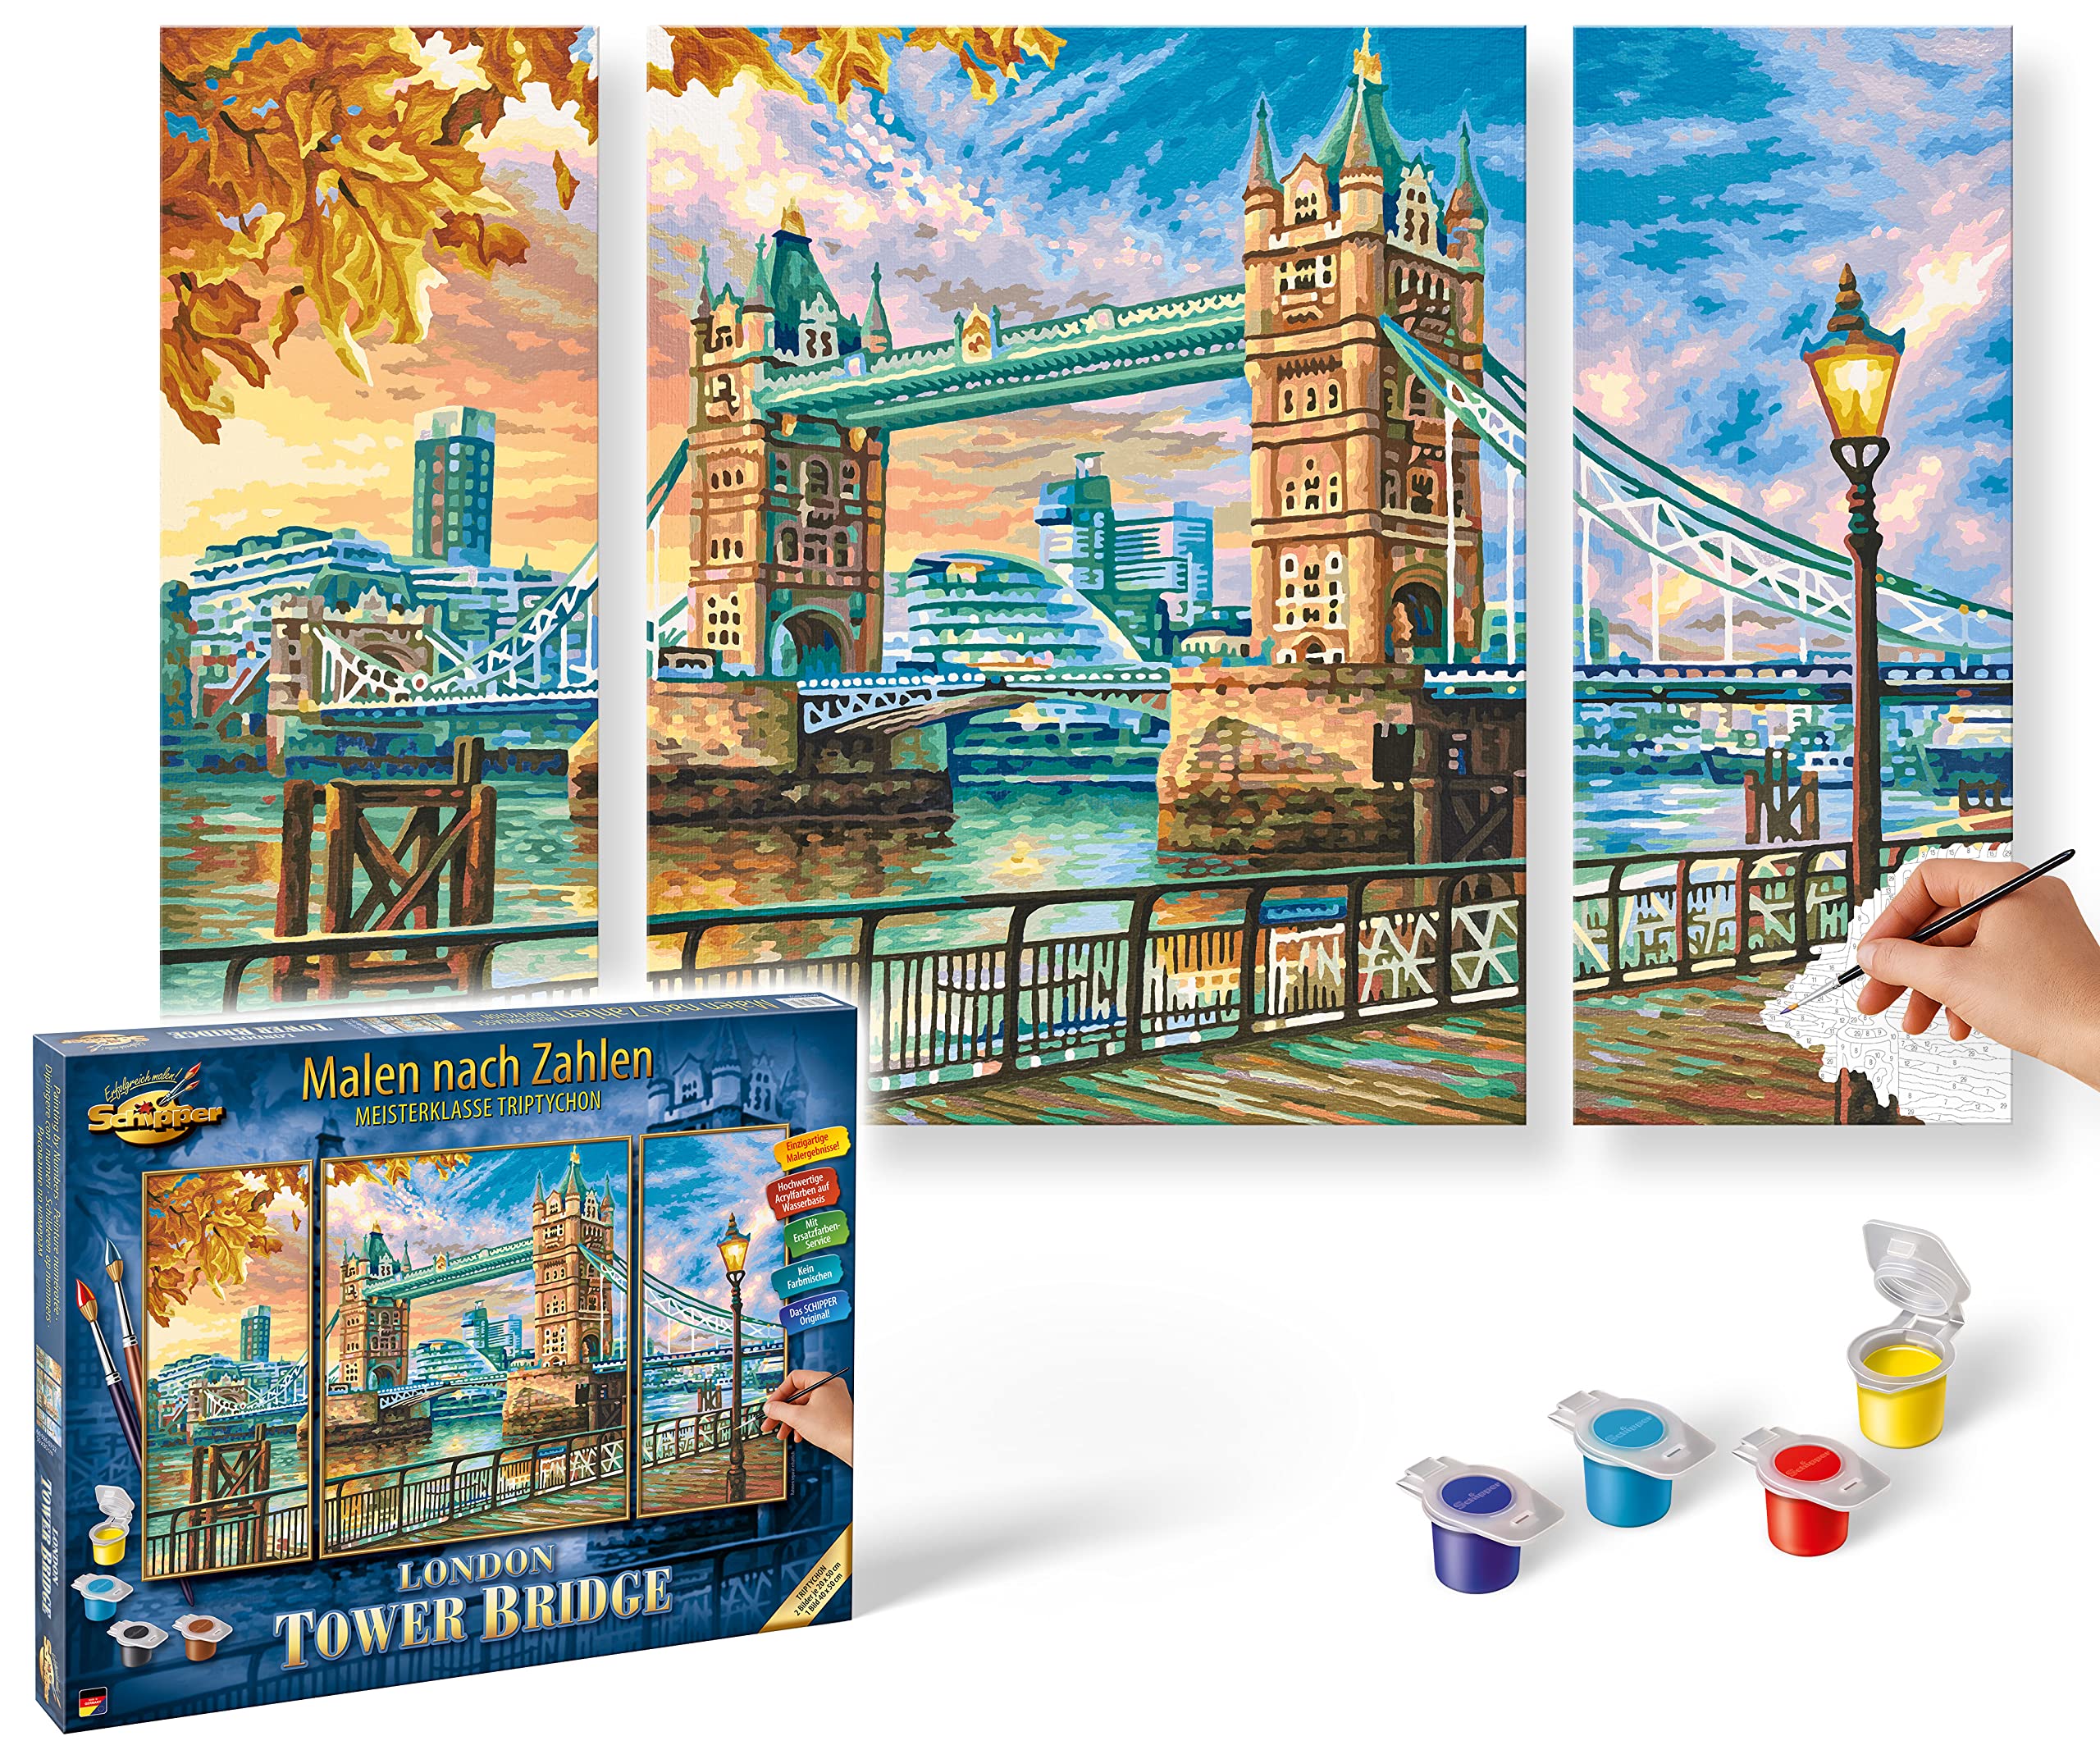 Schipper 609260752 Malen nach Zahlen - London Tower Bridge - Bilder malen für Erwachsene, inklusive Pinsel und Acrylfarben, Triptychon, 50 x 80 cm